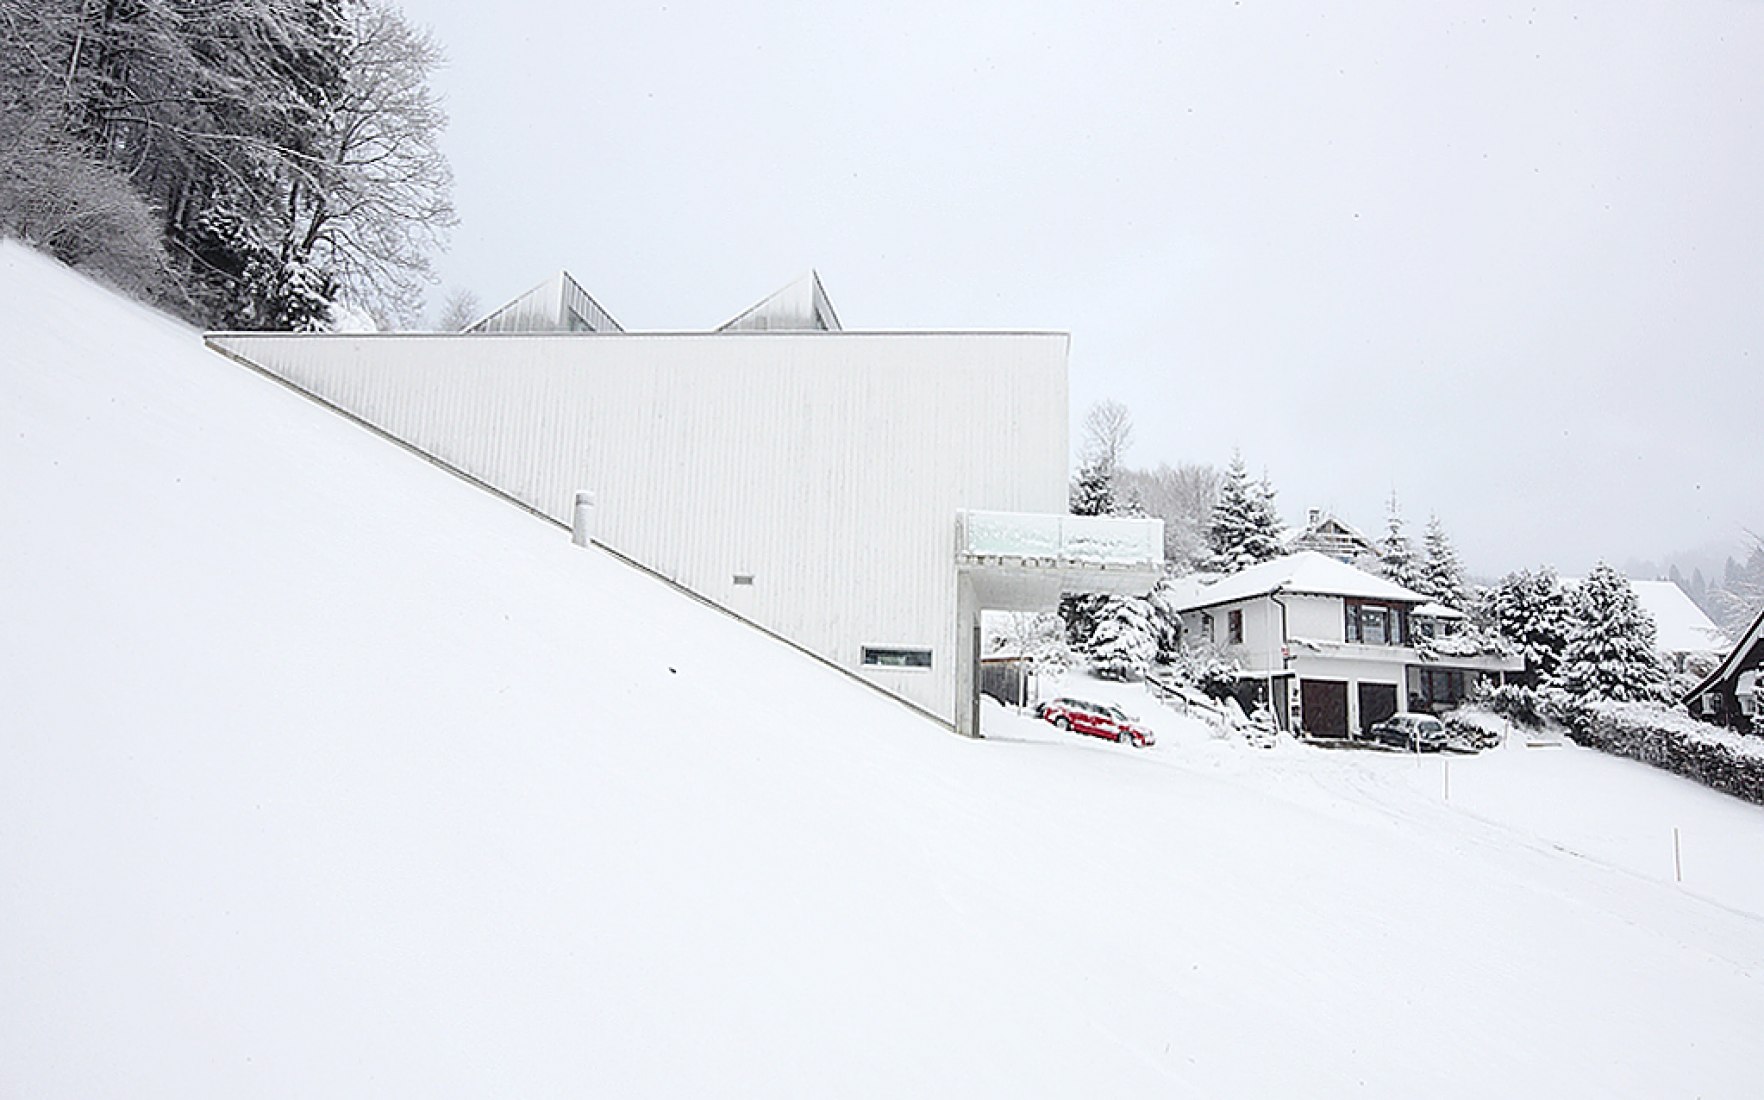 Vista exterior. Atelier Albert Oehlen por Ábalos + Sentkiewicz y Enguita & Lasso Arquitectos. Fotografía © José Hevia.